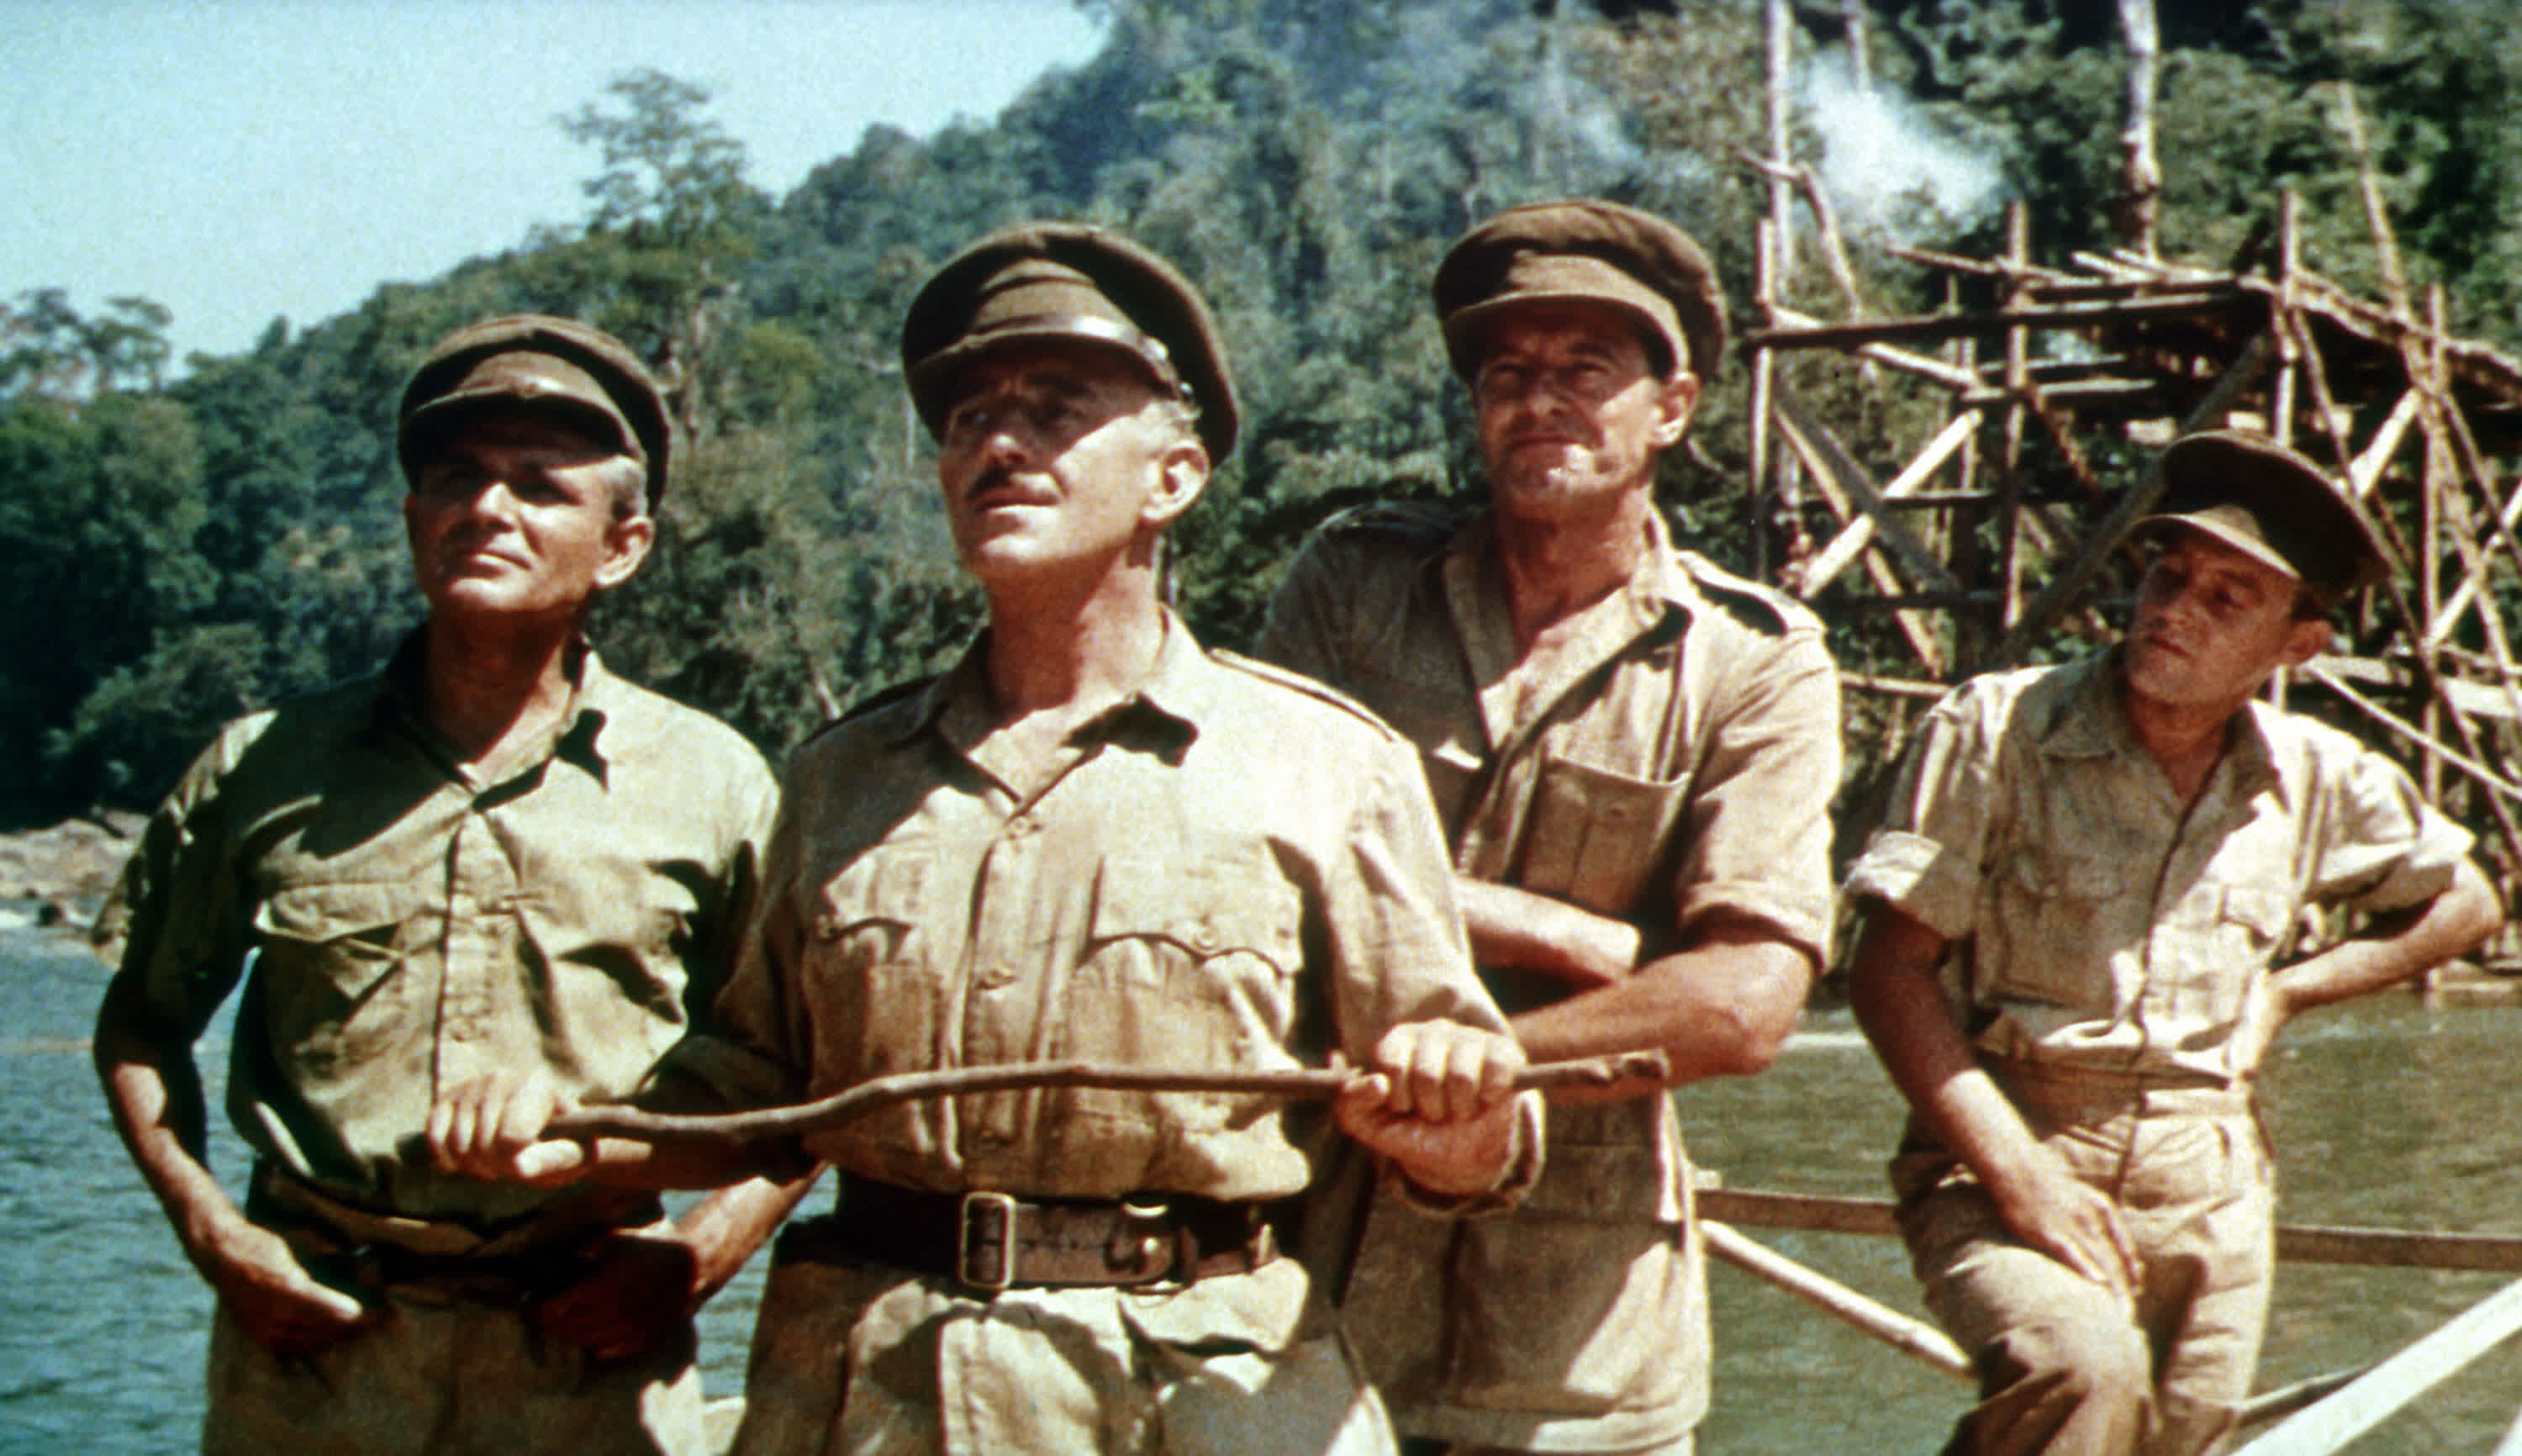 فیلم پل رودخانه کوای 1957